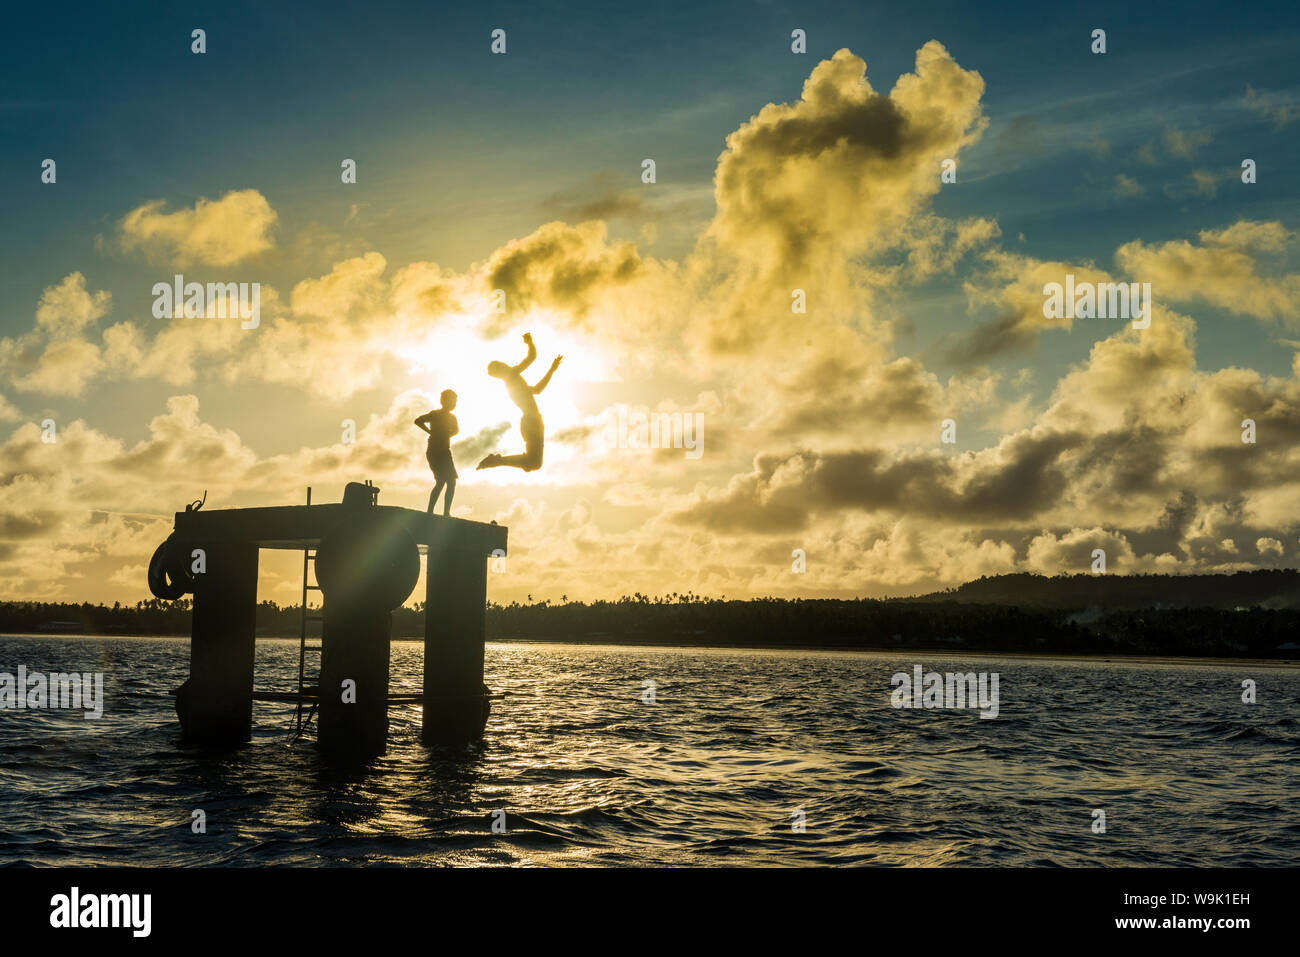 Hintergrundbeleuchtung lokalen Jungen springen ins Wasser der Lagune von Wallis von einer Plattform, Wallis und Futuna, Pazifik Stockfoto